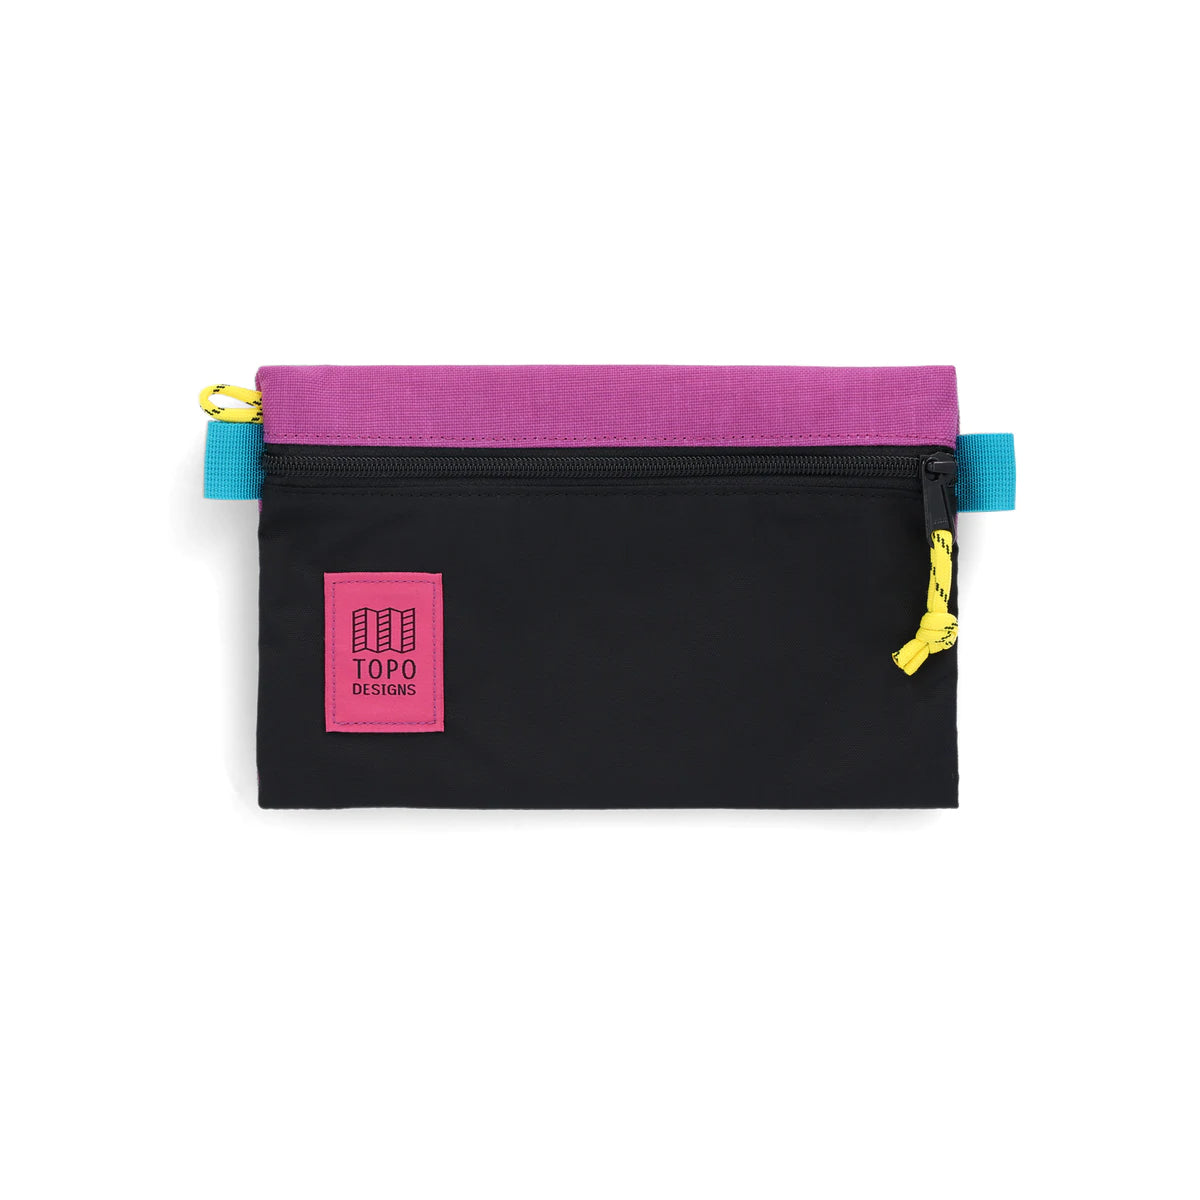 Topo Designs : Accessory Bag : Black/Grape